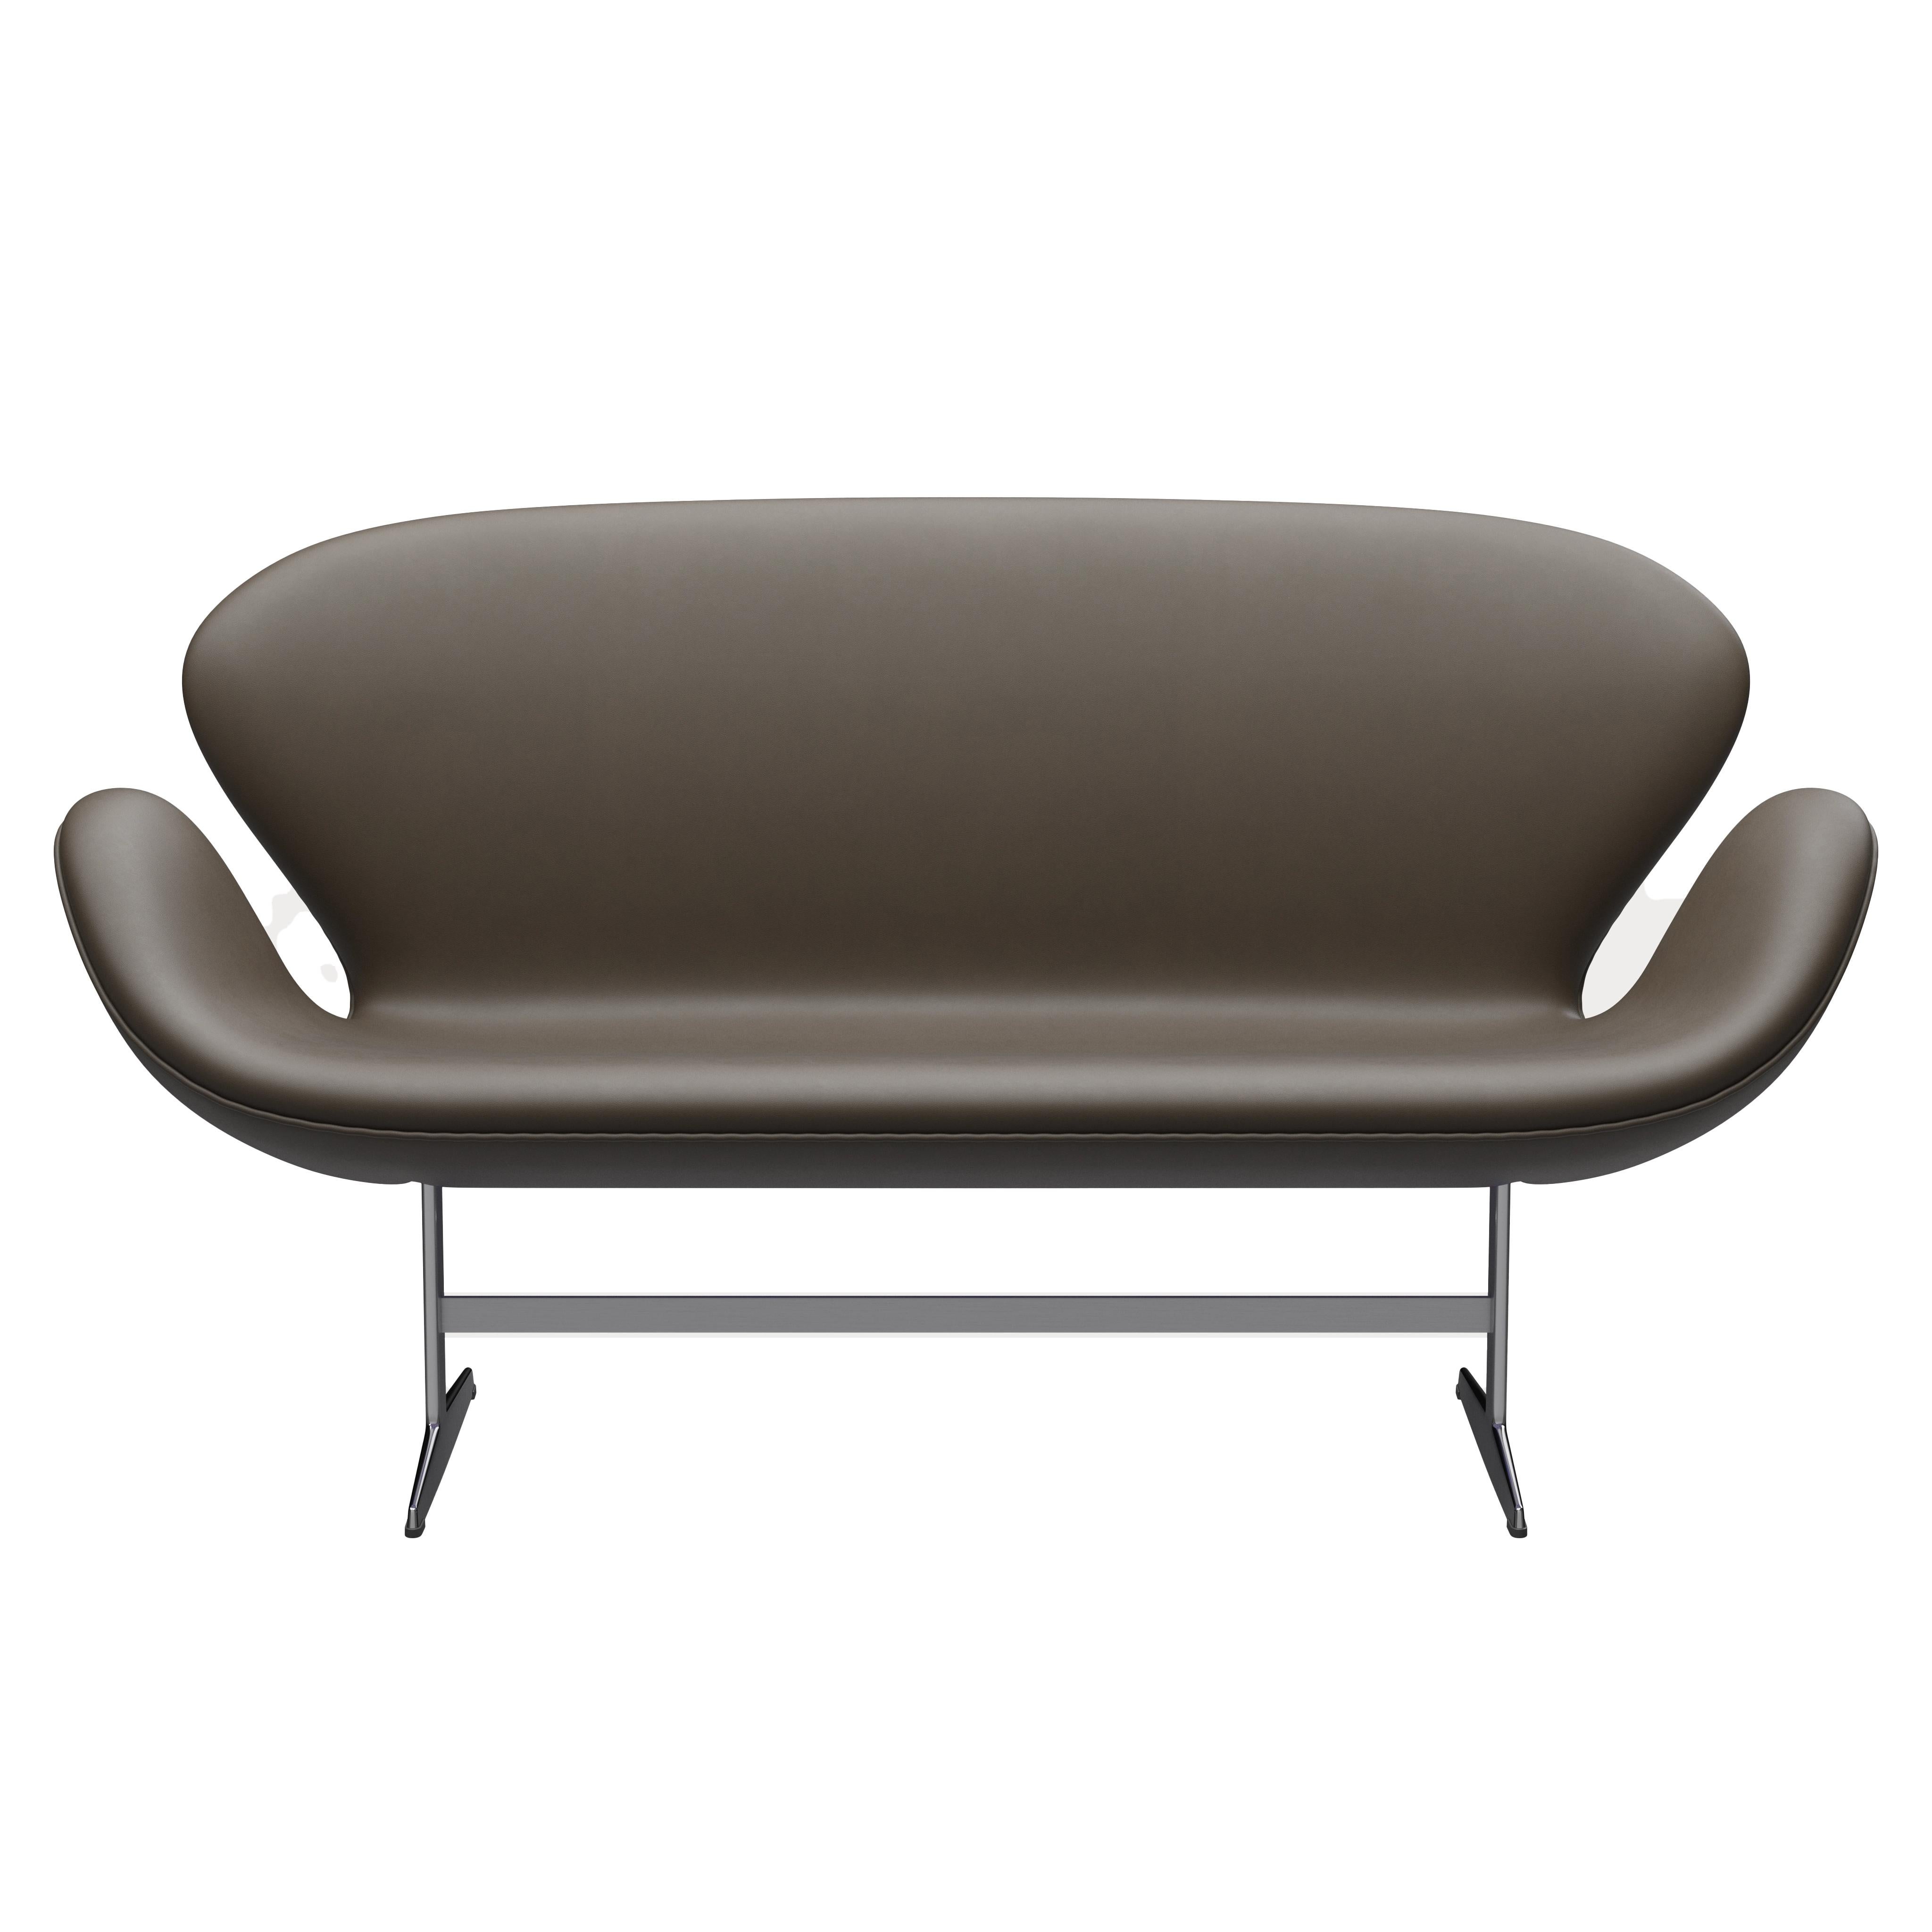 Arne Jacobsen 'Swan' Sofa for Fritz Hansen in Leather Upholstery (Cat. 3) For Sale 4